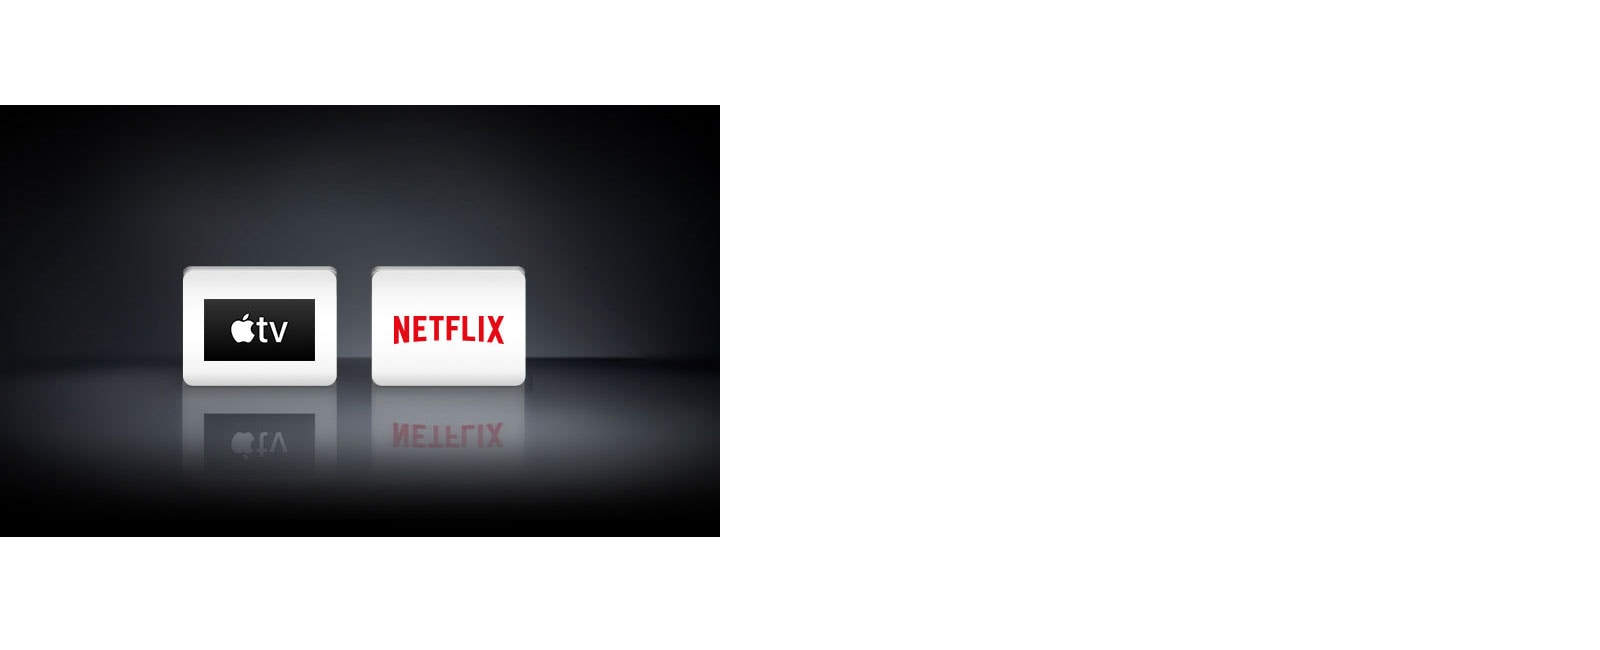 Dva logotipa aplikacija prikazana slijeva nadesno: aplikacija Apple TV i Netflix